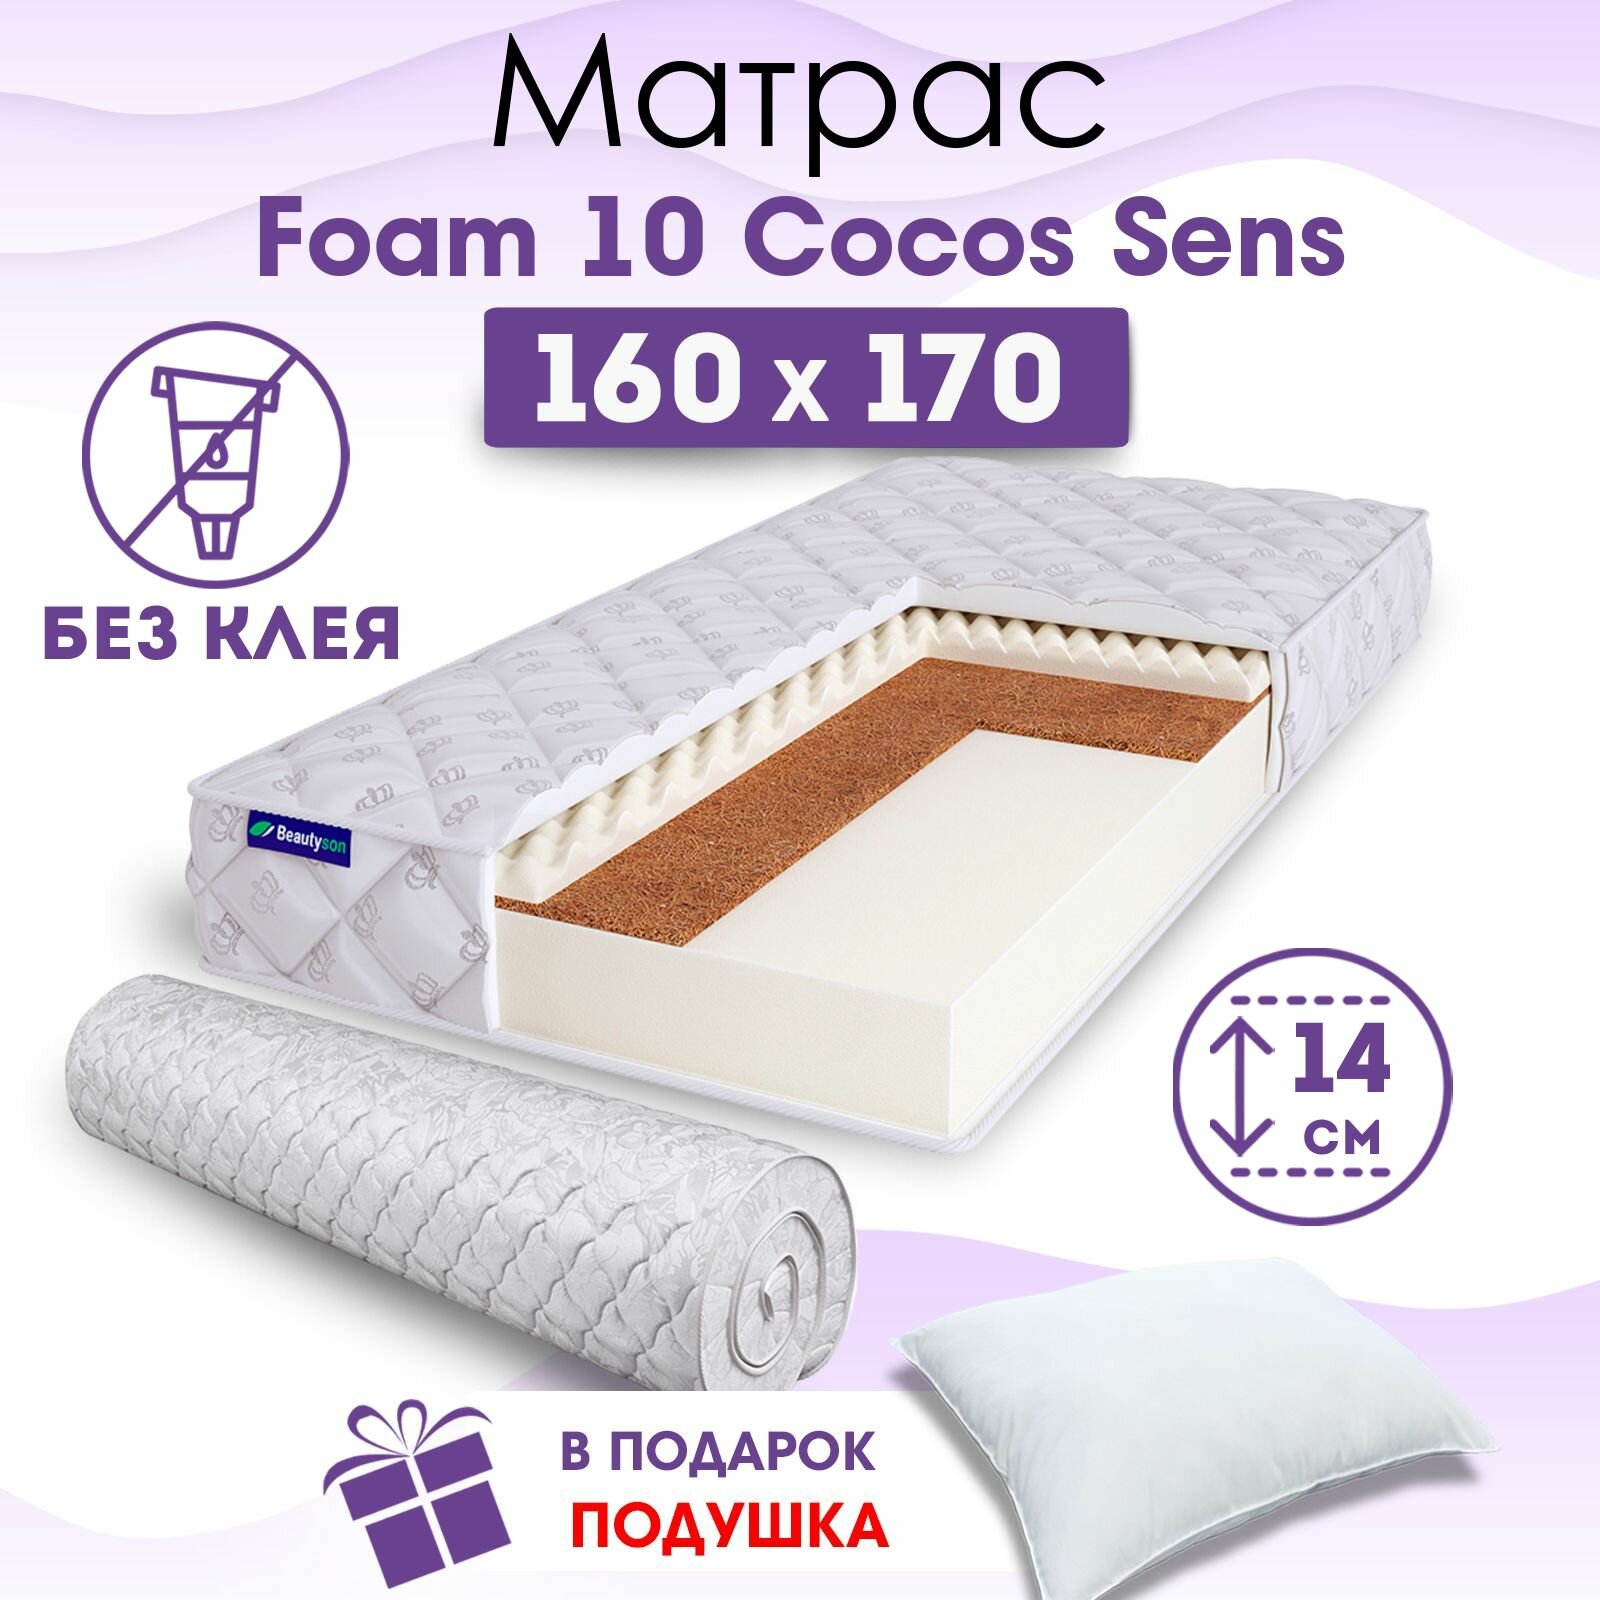 Ортопедический матрас Beautyson Foam 10 Cocos Sens без клея, 160х170, 14 см, беспружинный, двуспальный, на кровать, для дивана, умеренно мягкий